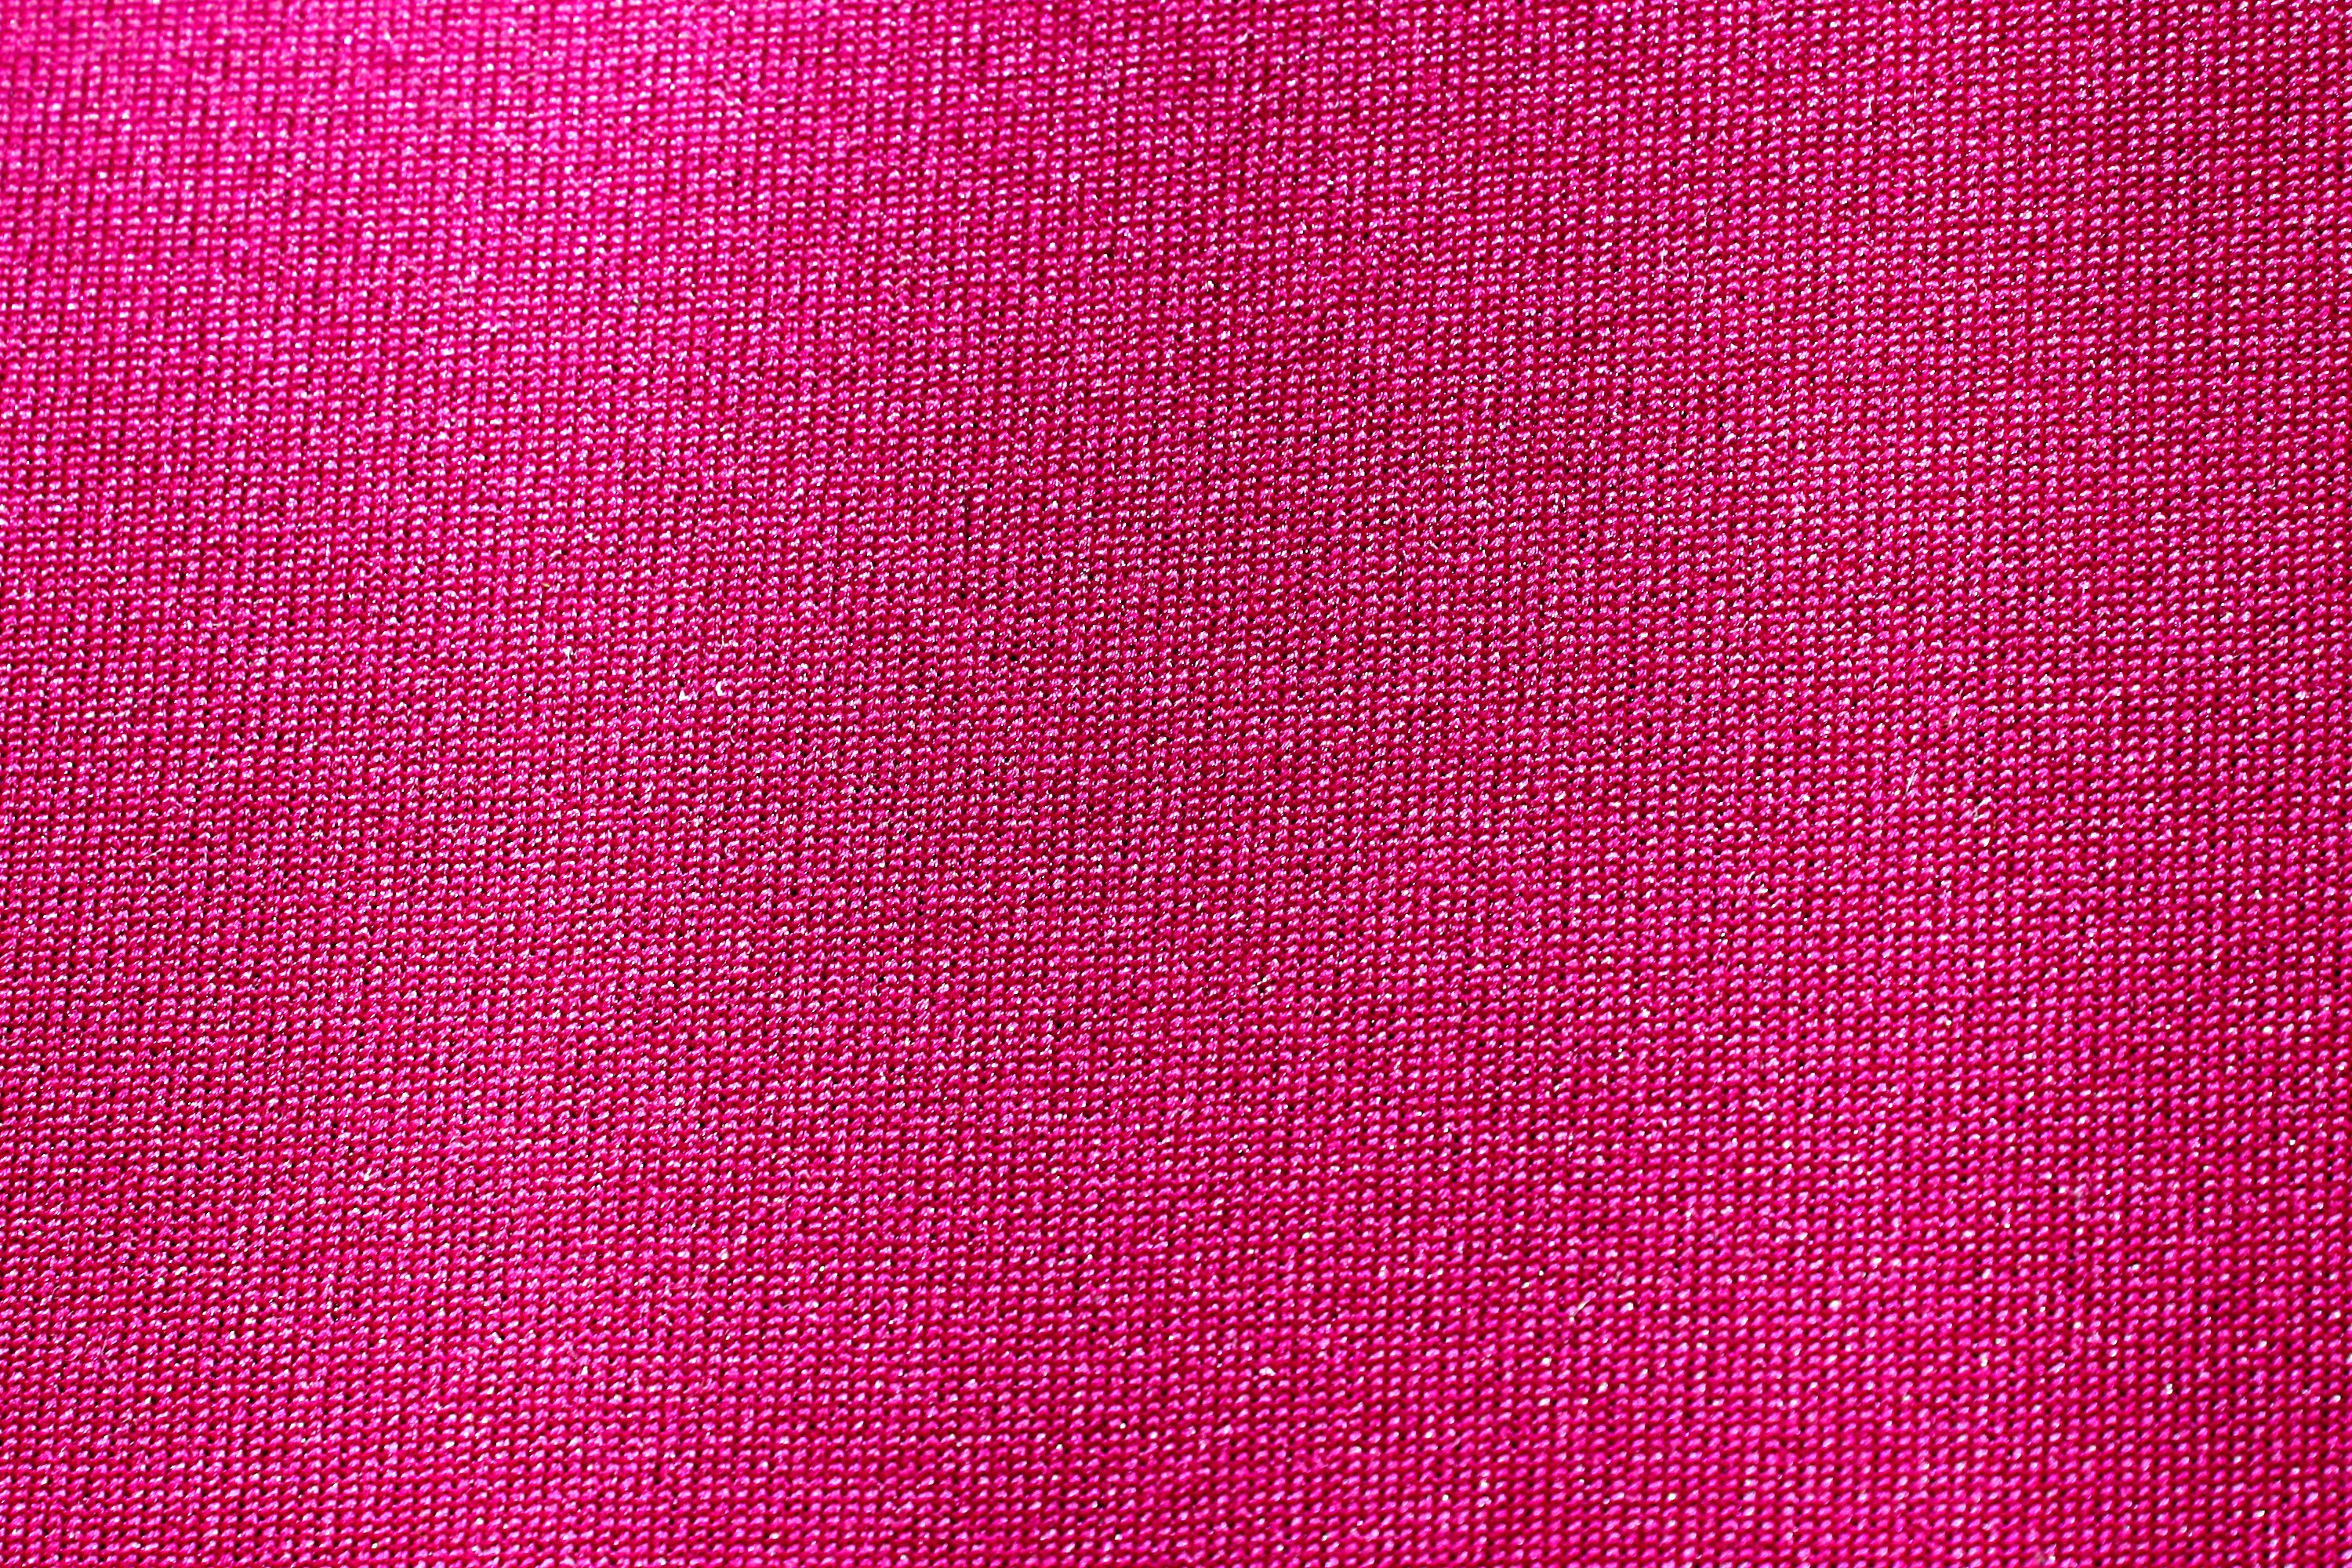 rosa tapete für mädchen,rosa,rot,lila,violett,textil 